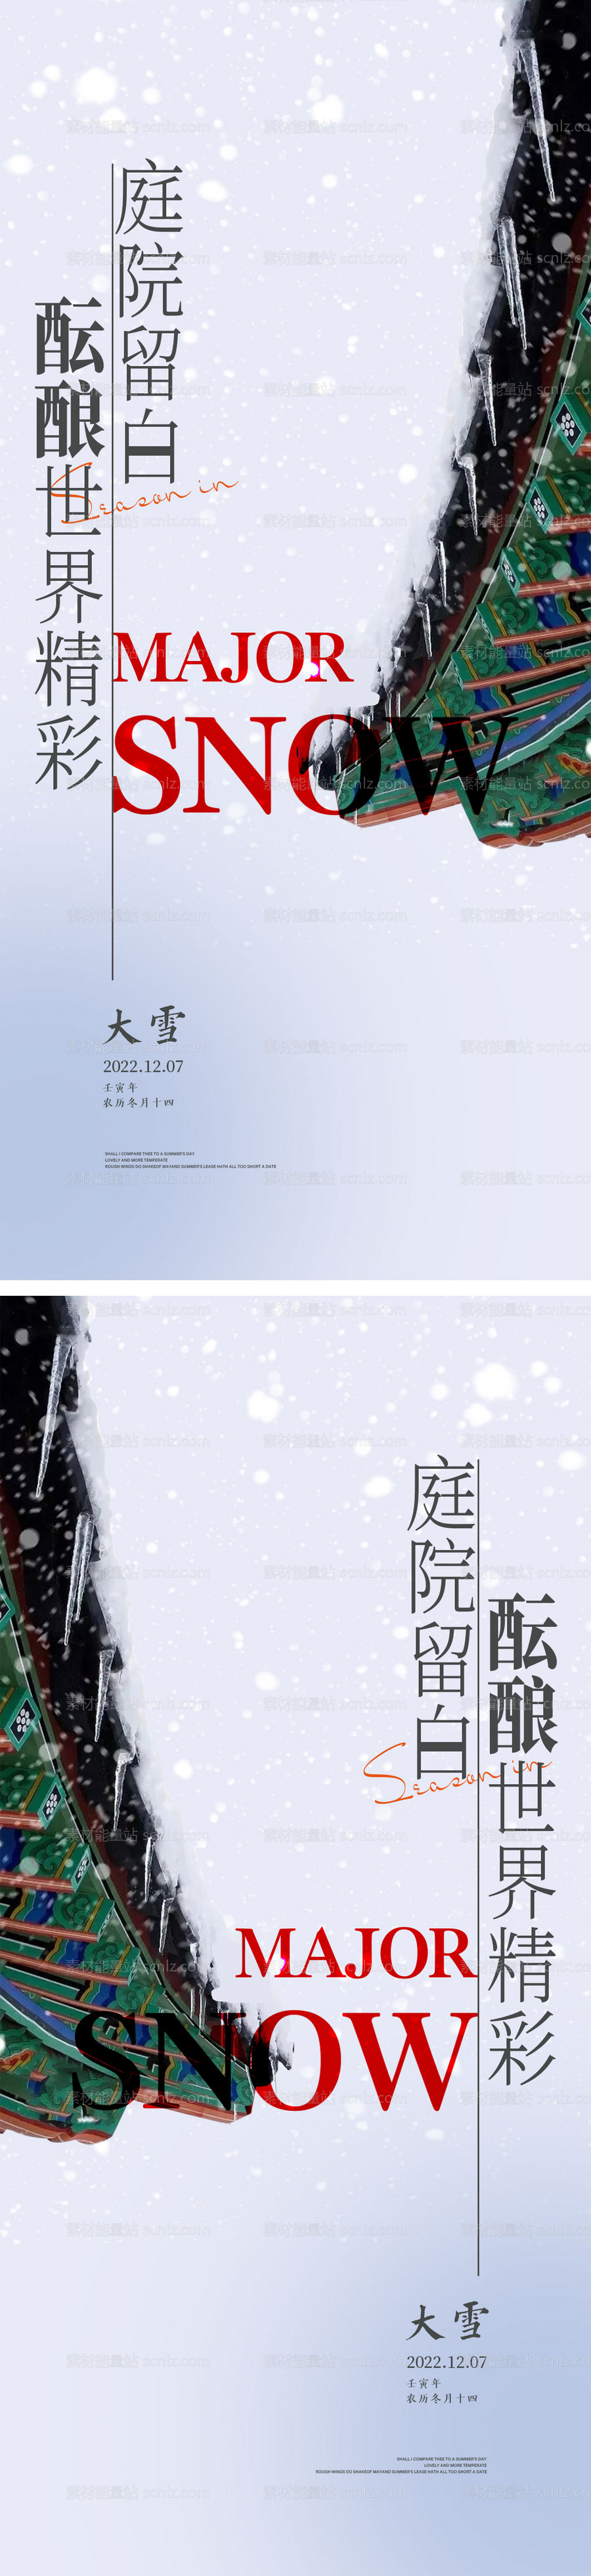 素材能量站-大雪节气海报 中国二十四时节气